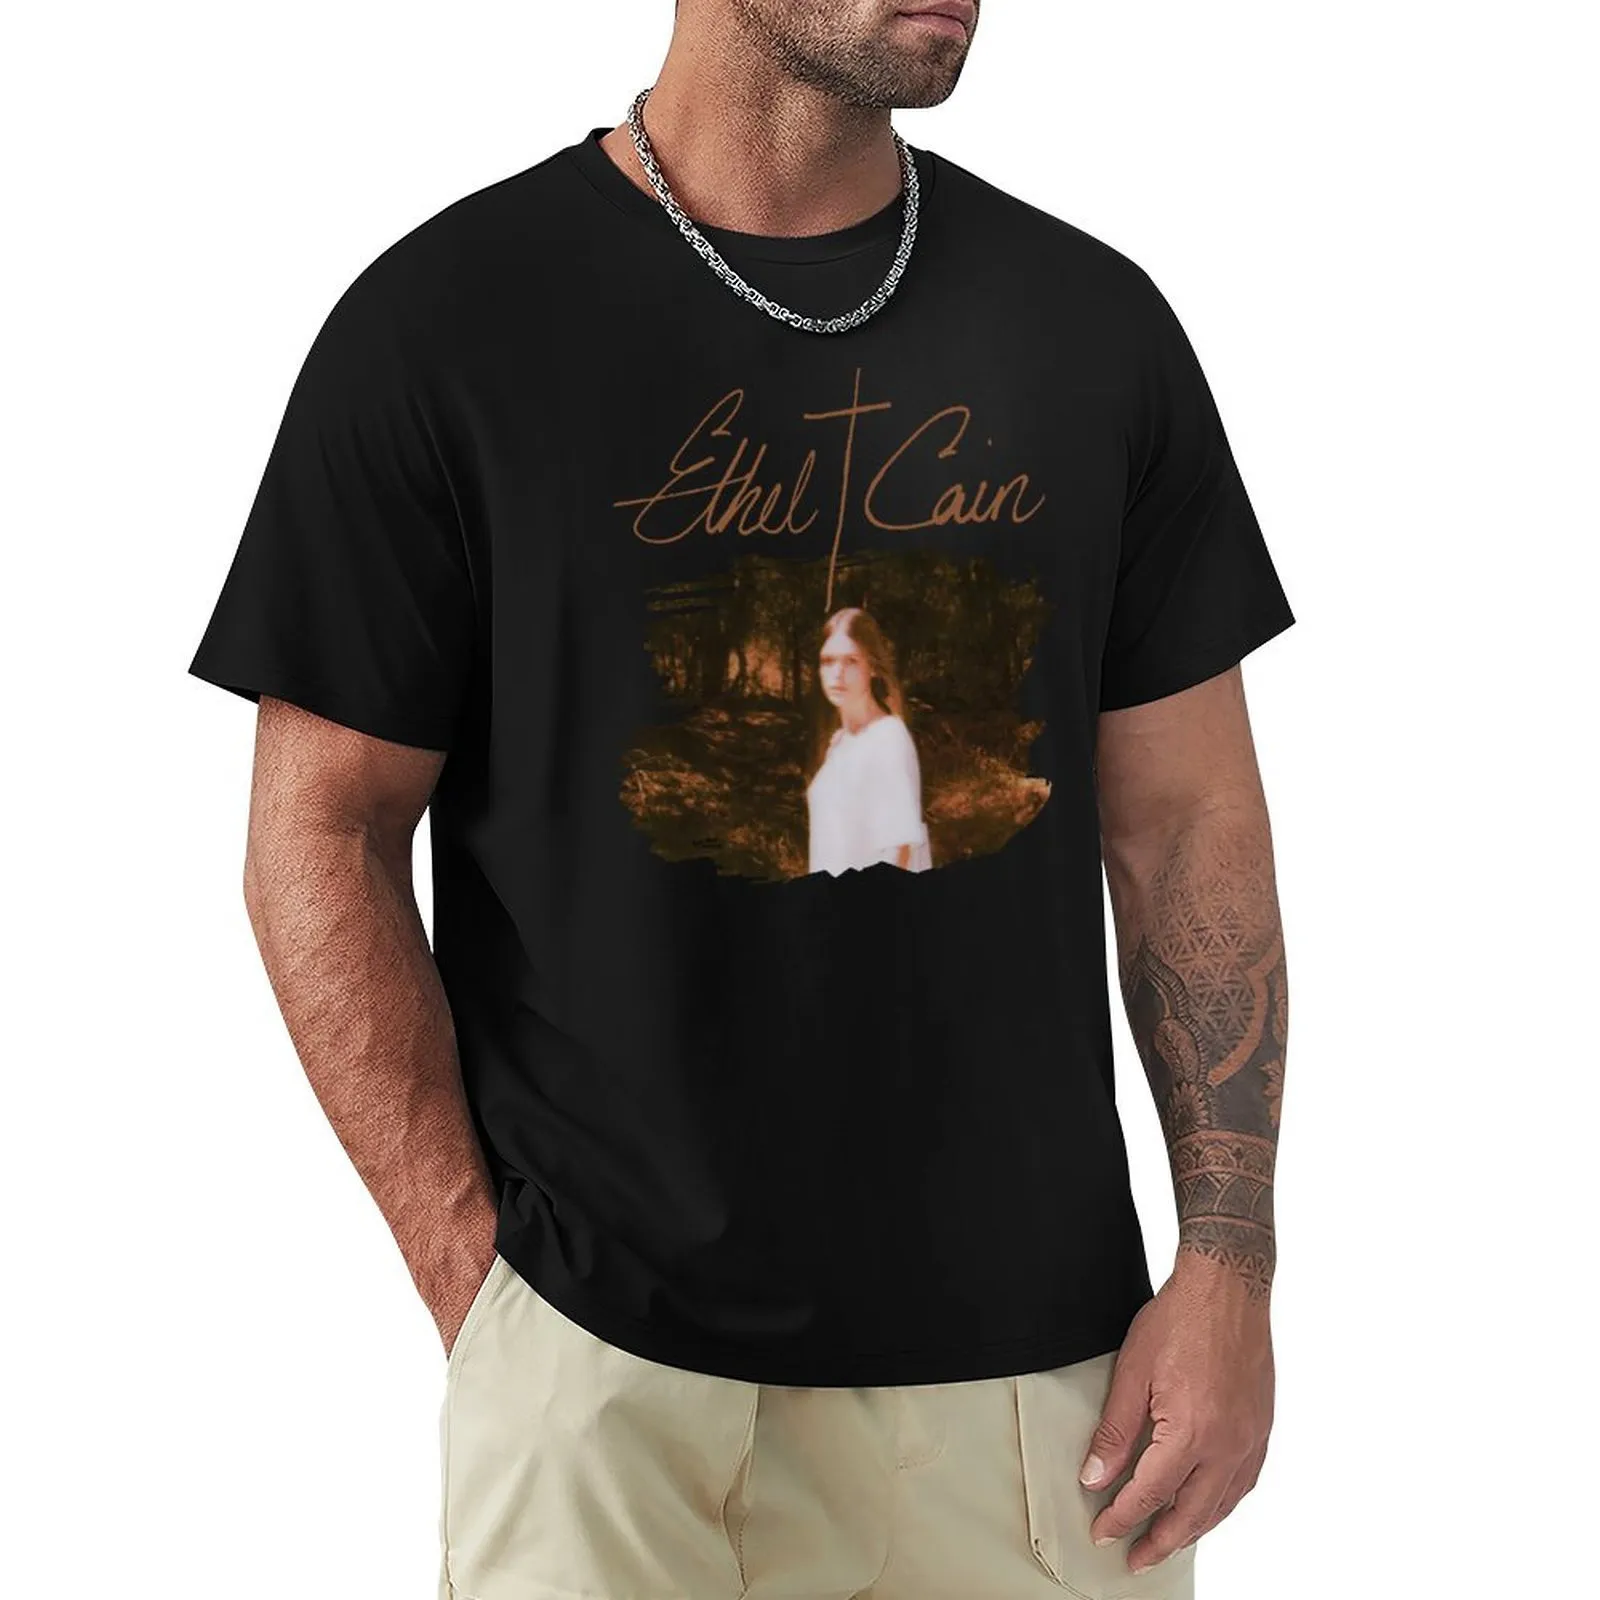 Regatas masculinas Ethel Cain Po com texto v2 TShirt Graphics t shirt homem tops fofos camisetas gráficas masculinas hip hop 230720